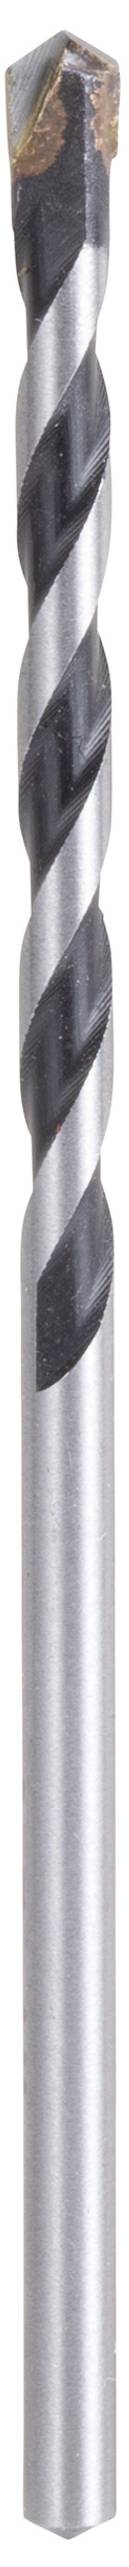 MAKITA E-10958 Hartmetall Mehrzweckbohrer 1 Stück 3 mm Gesamtlänge 70 mm Schnellspannbohrfutter 1 St